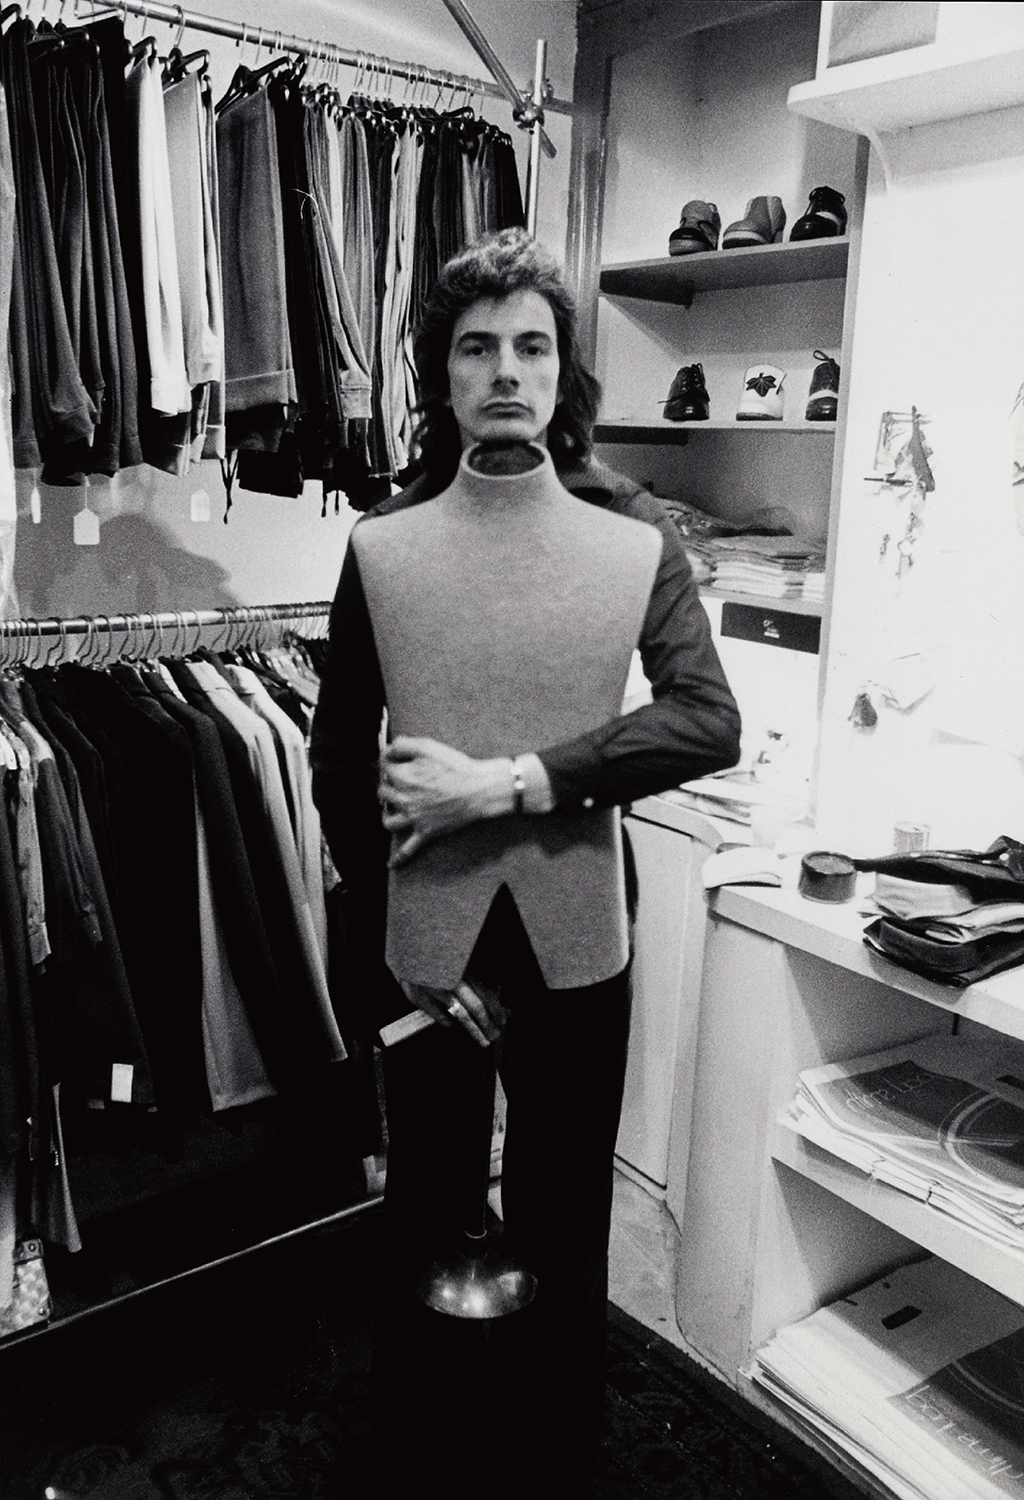 從儲藏室起家的經典名牌_英國時尚設計師Paul_Smith談47年來的經營心法7.jpg